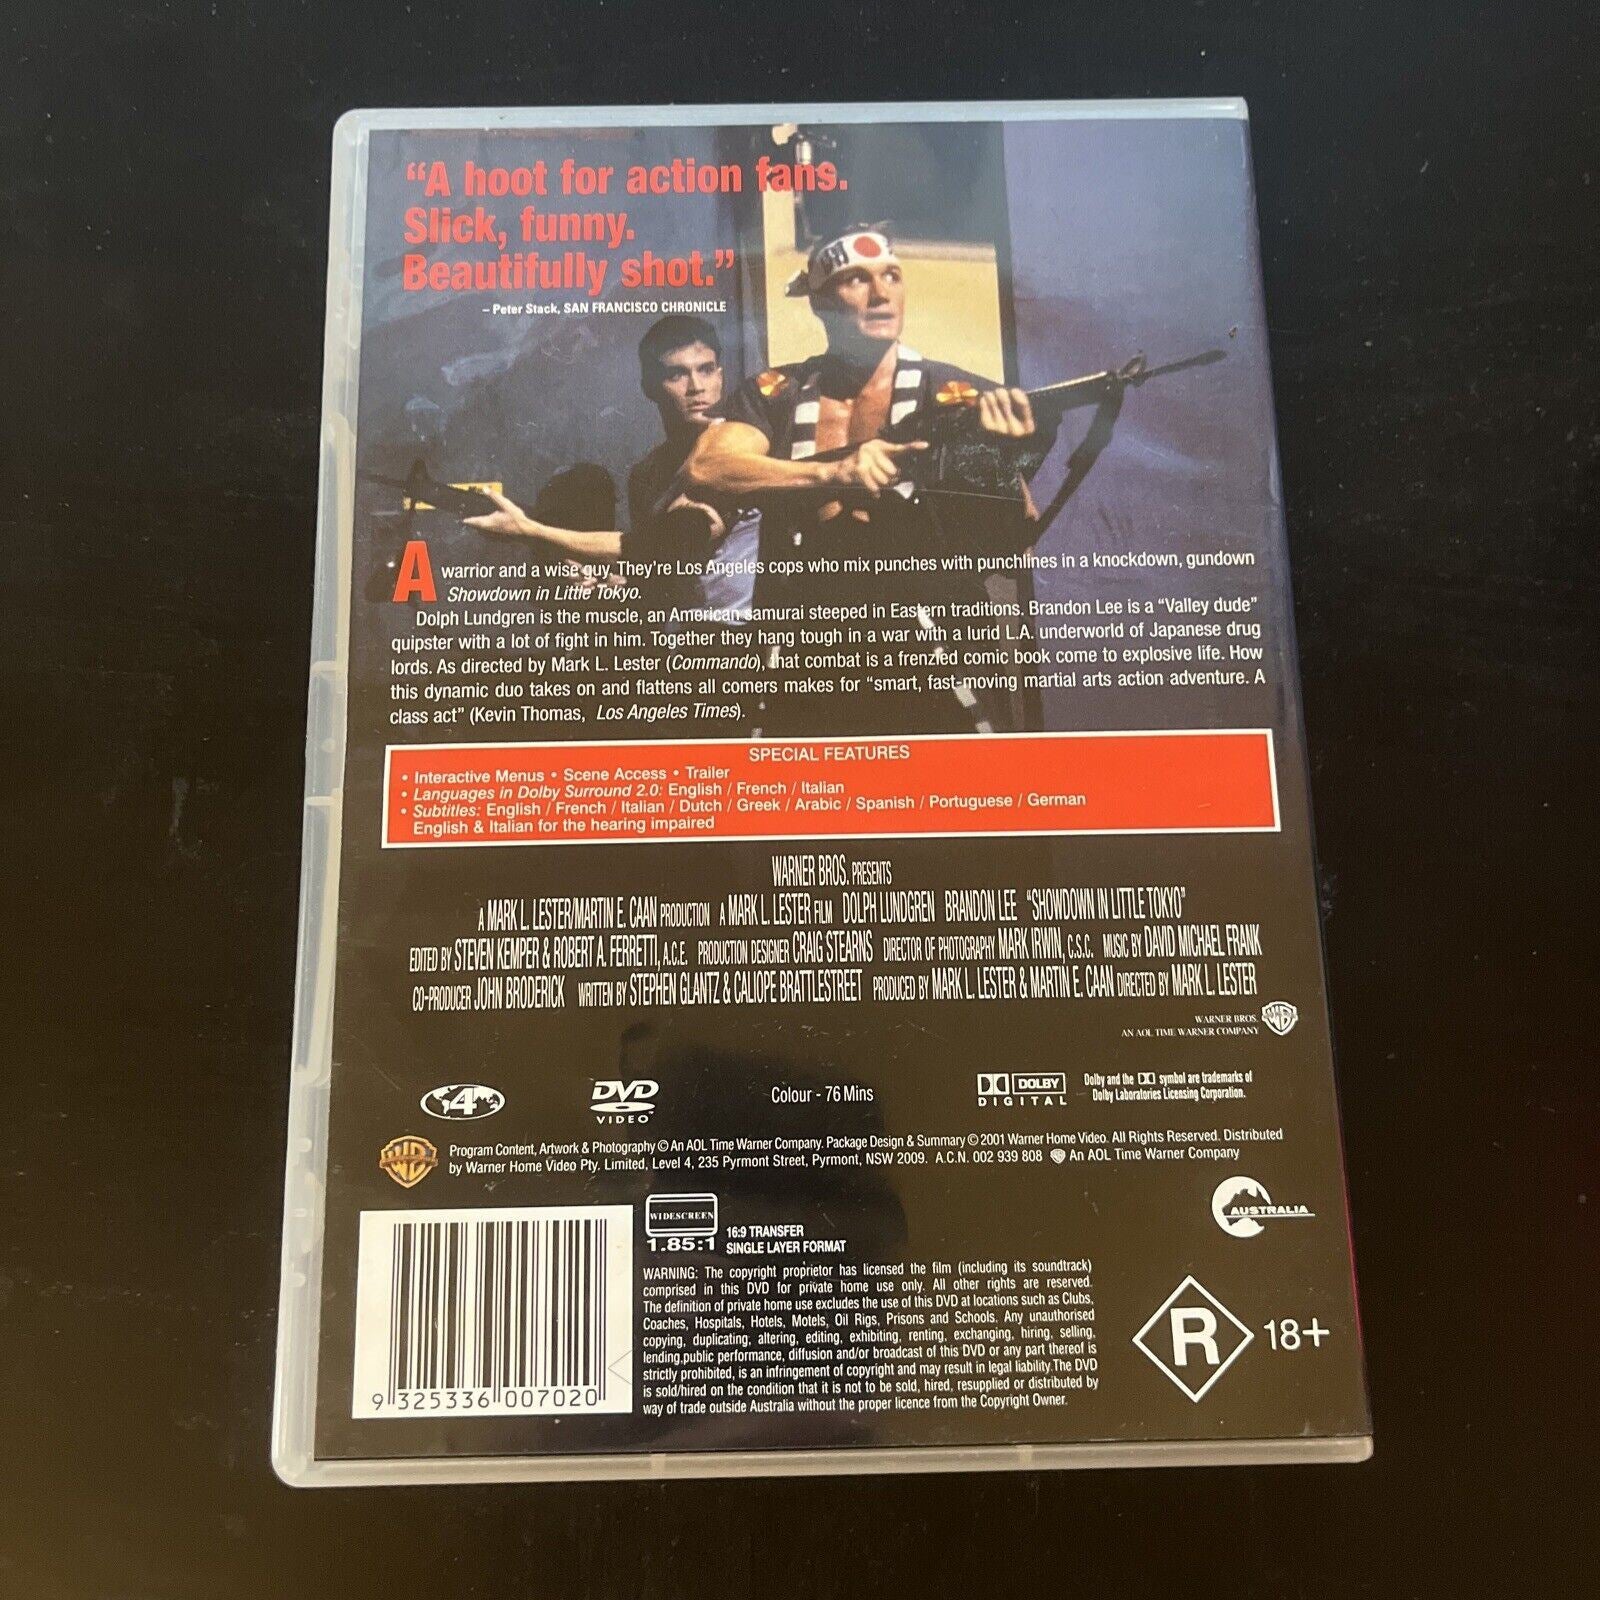 The Spikes Gang DVD 20 (2009) - DVD - LastDodo